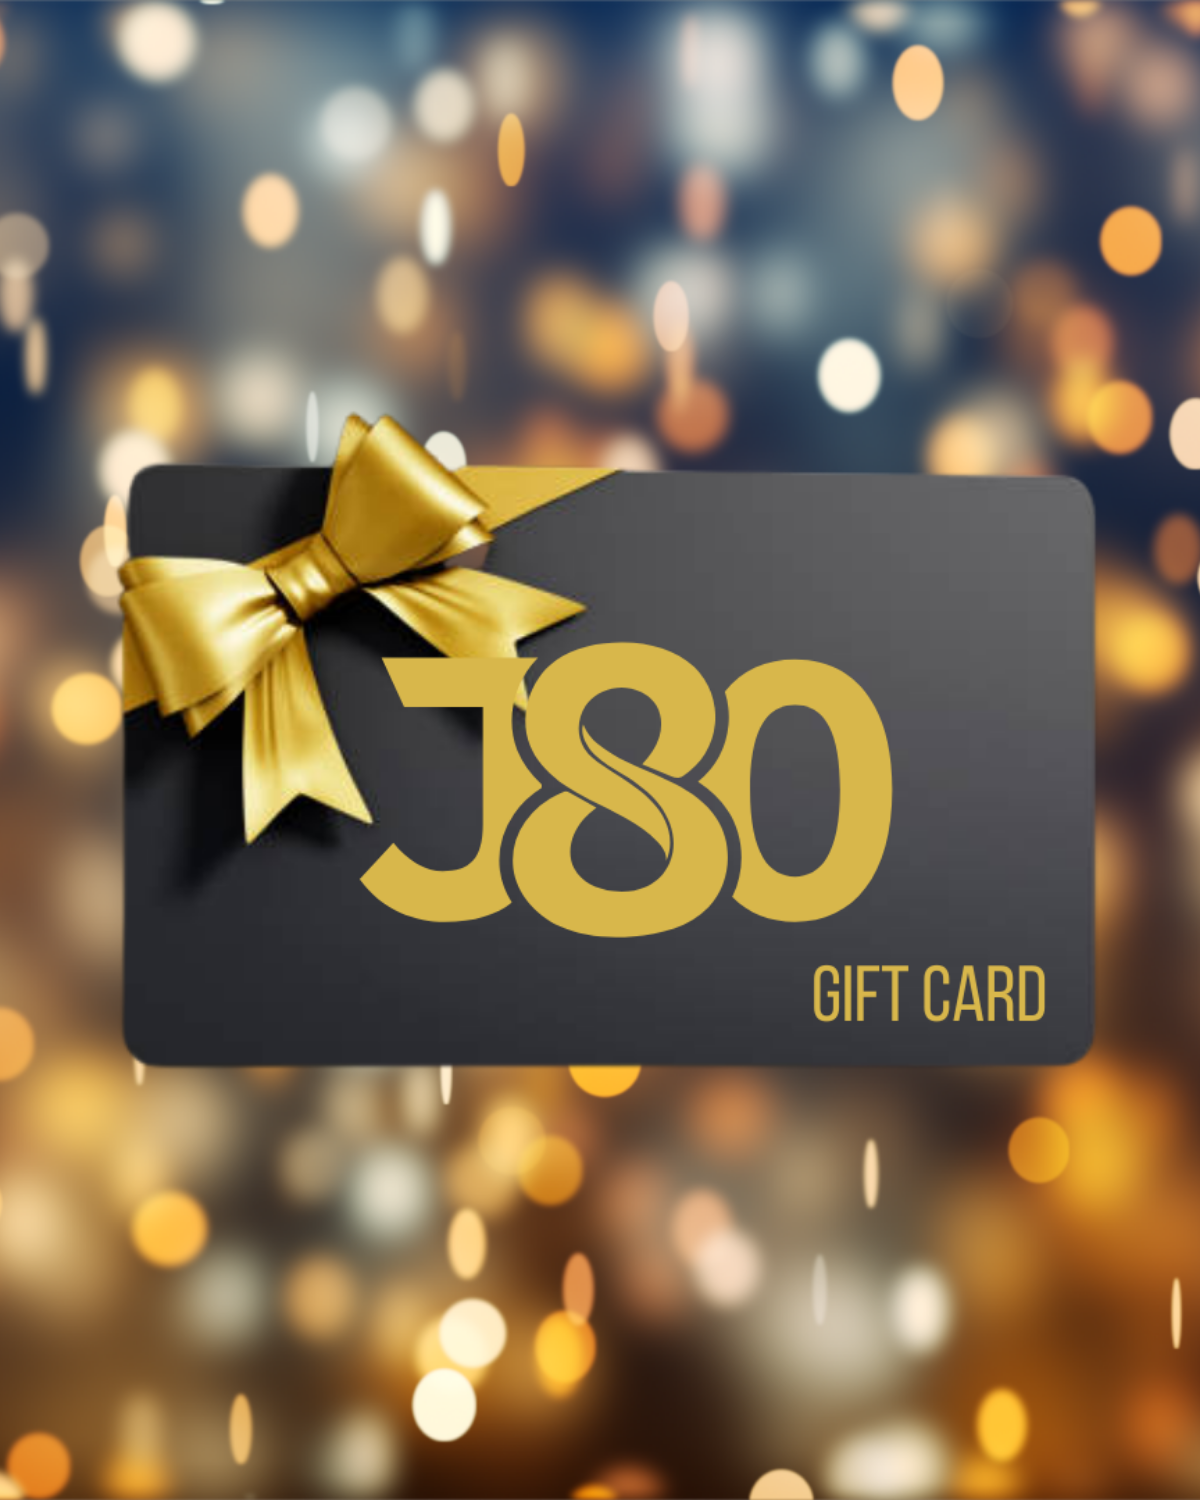 J80 Gift Card